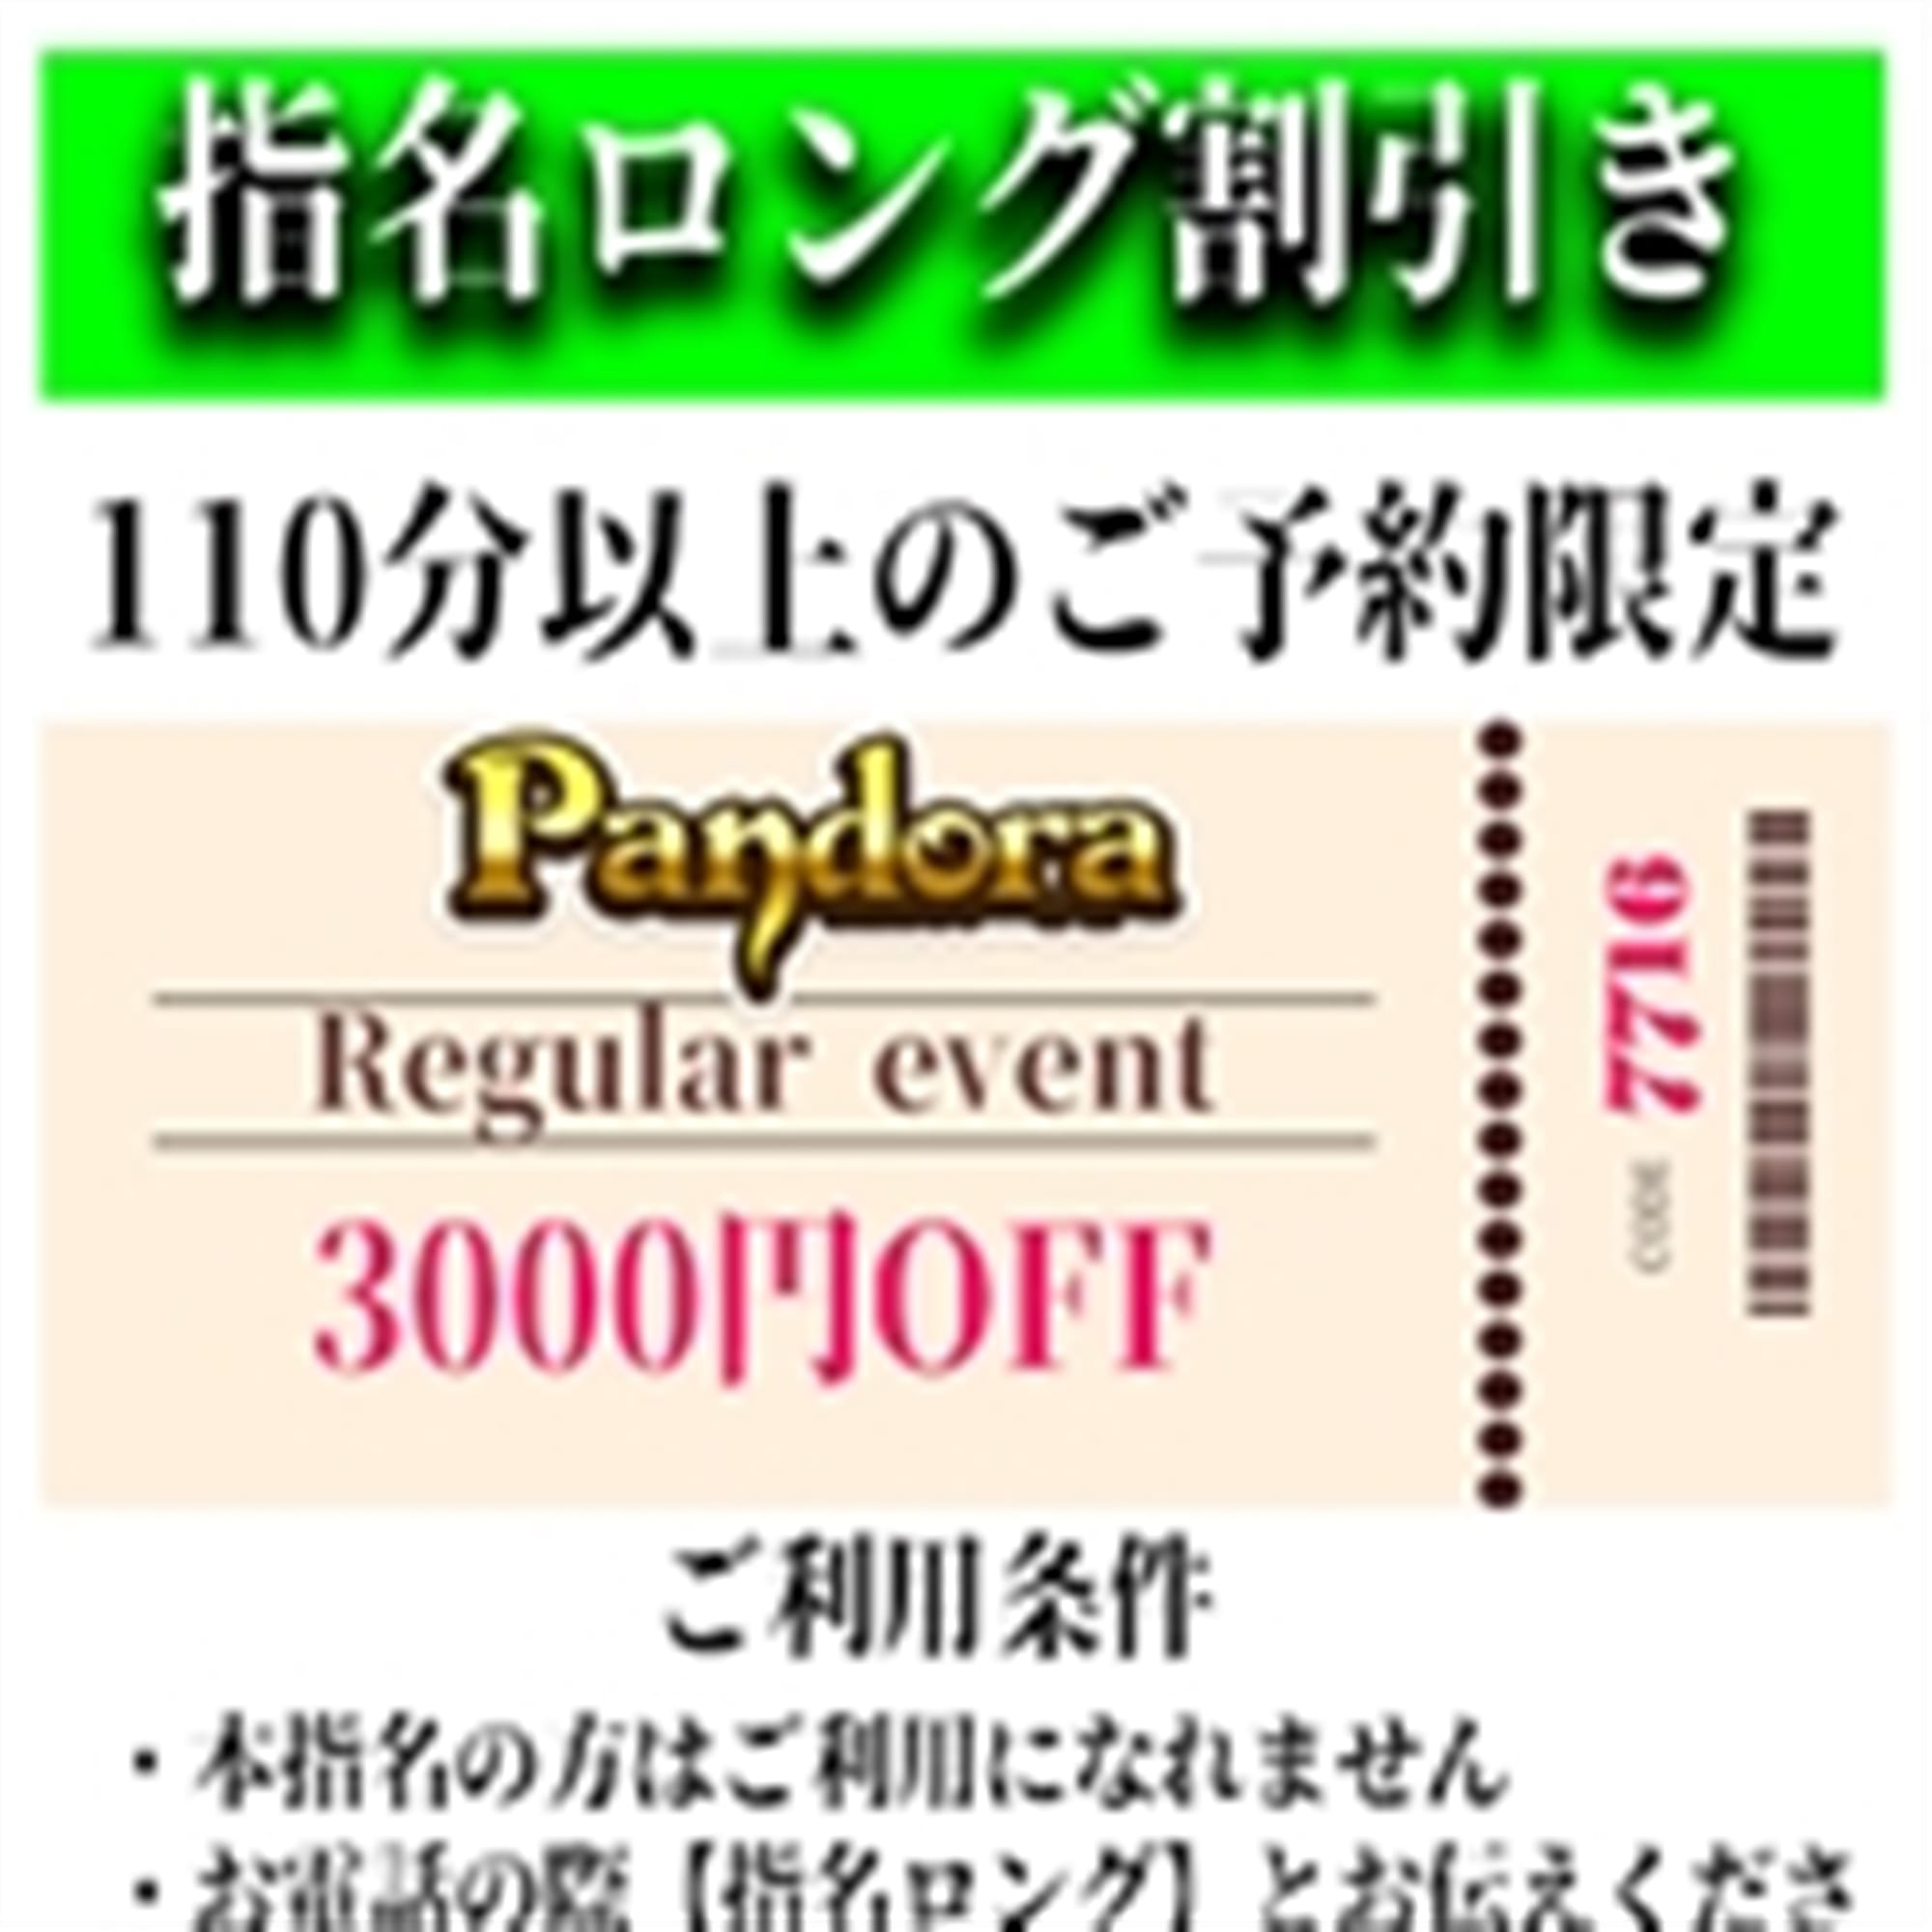 「ご指名のお客様も遊べるロングコース割引」04/27(土) 00:49 | Pandora(パンドラ)新潟のお得なニュース